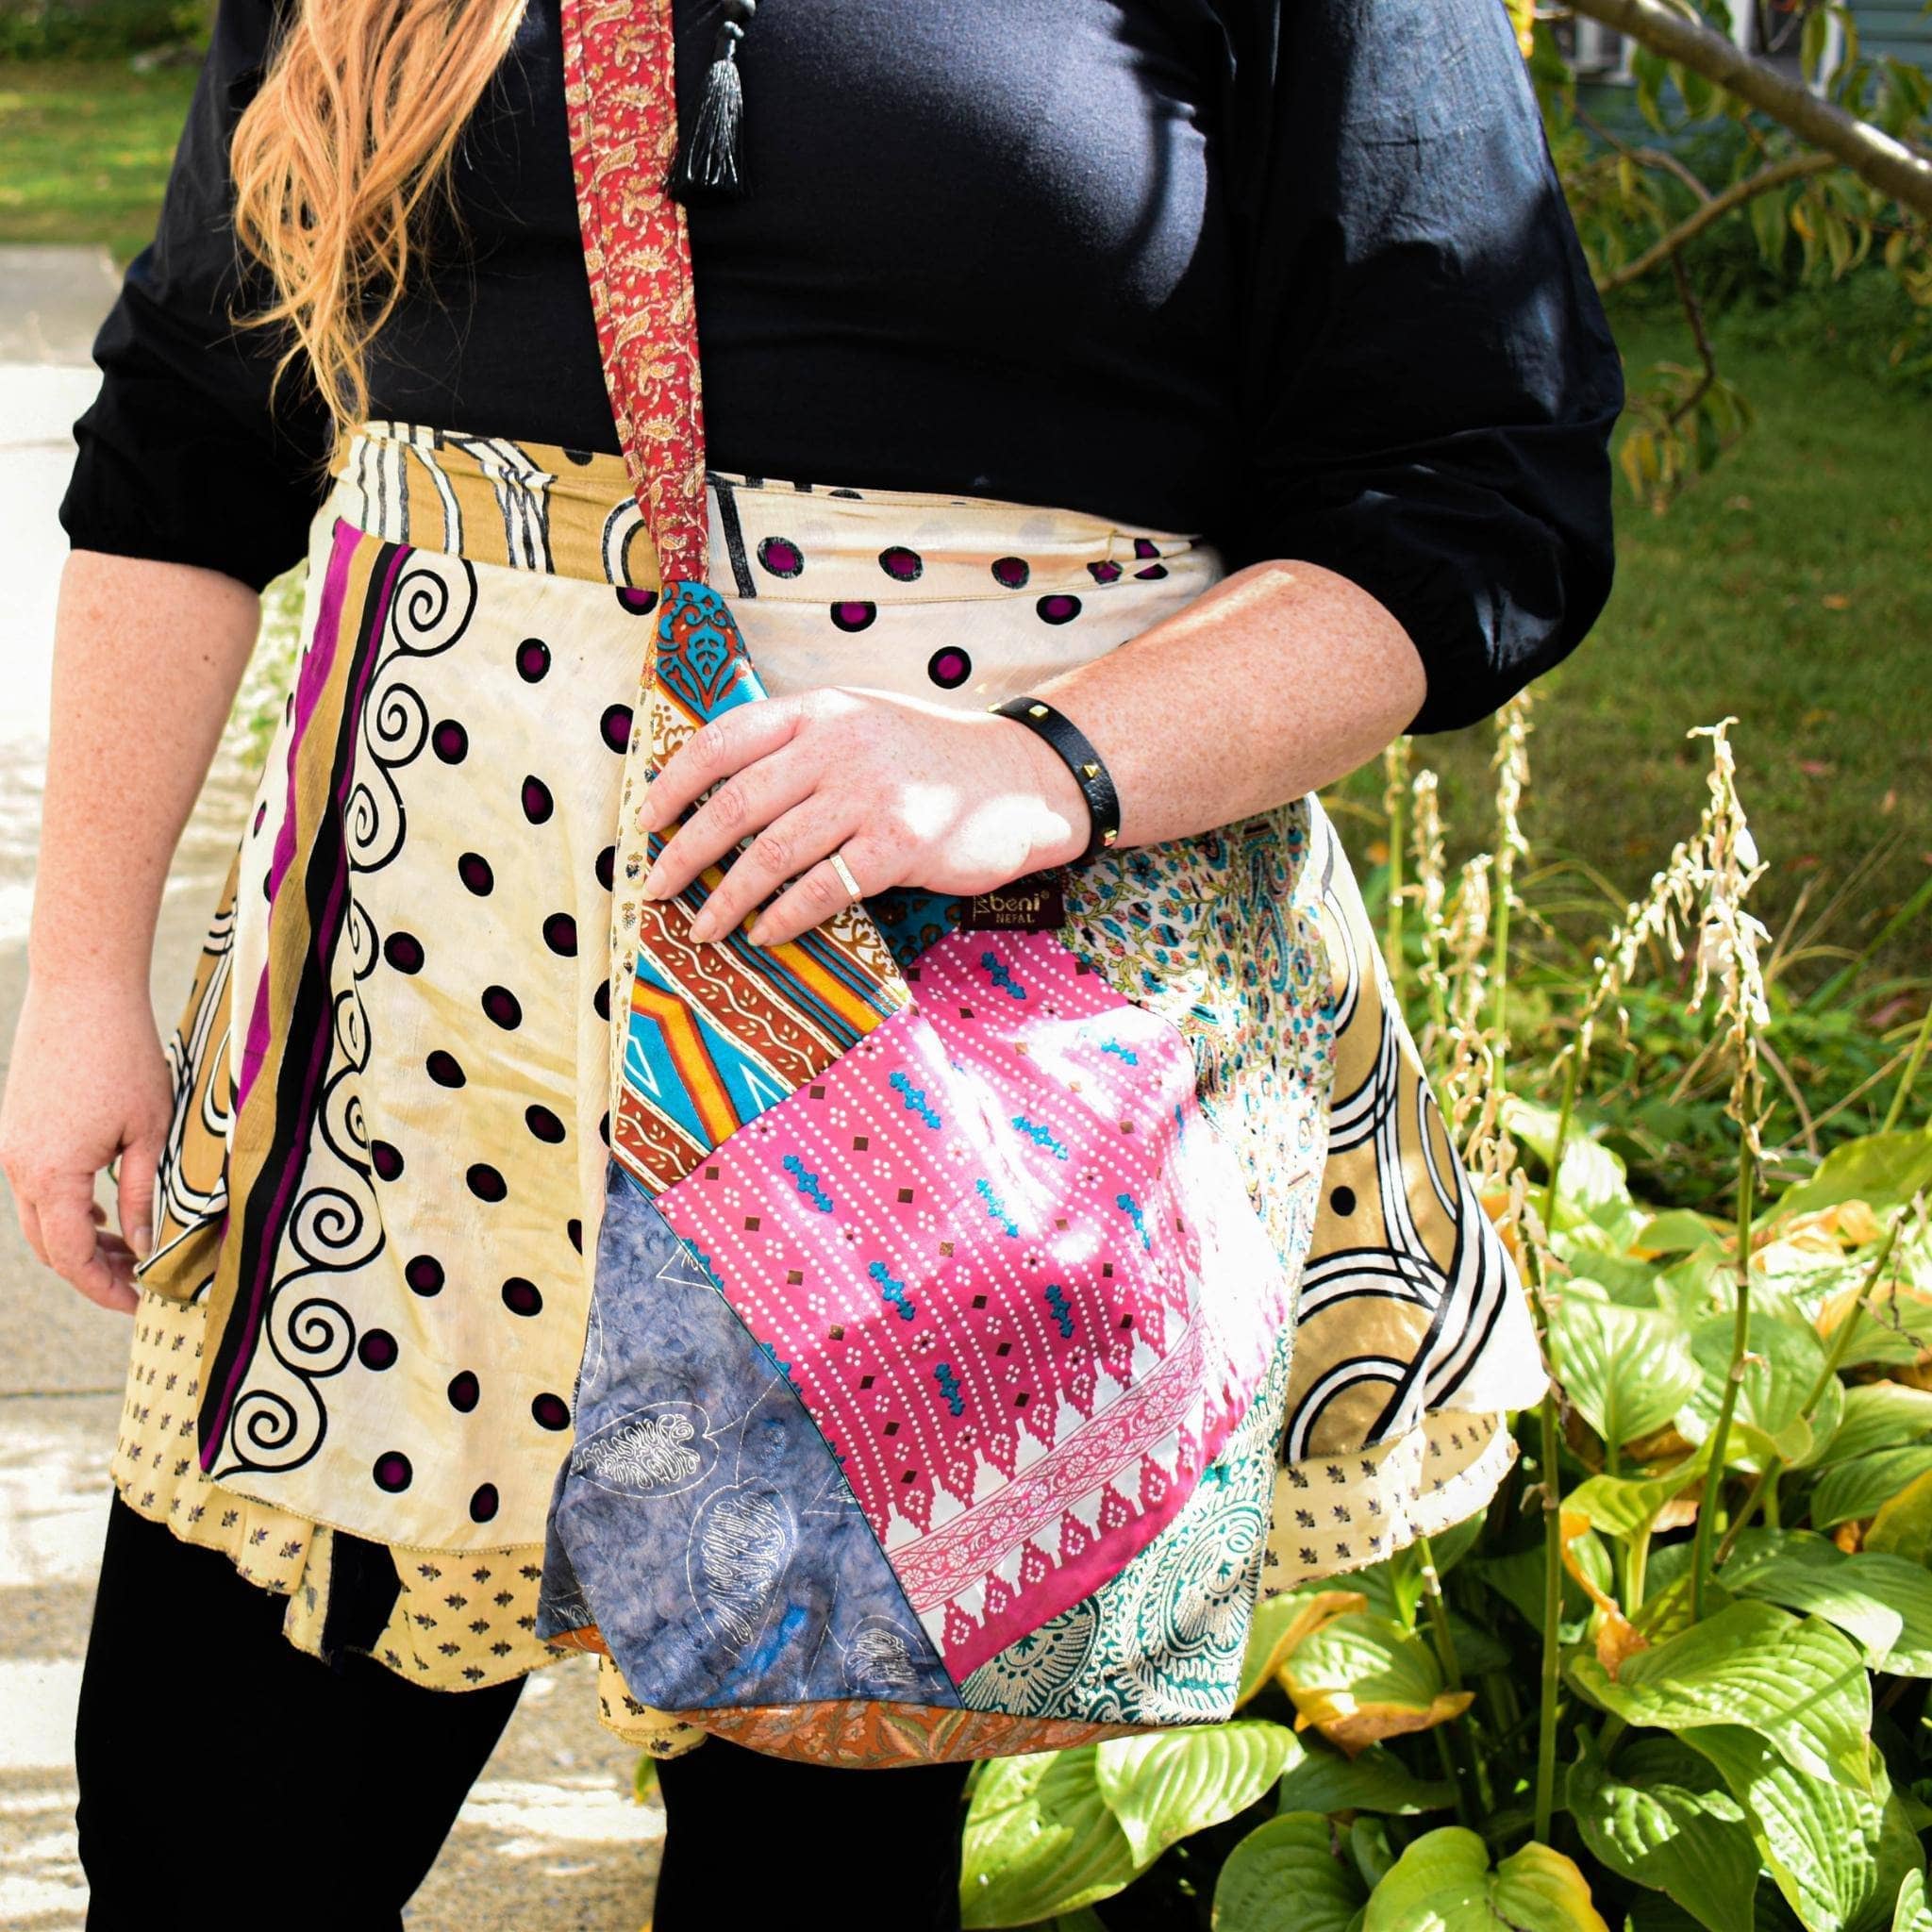 Fall Handbags I'm Loving from Amazon - Cyndi Spivey | Trendy purses, Fall  fashion purse, Fall handbags